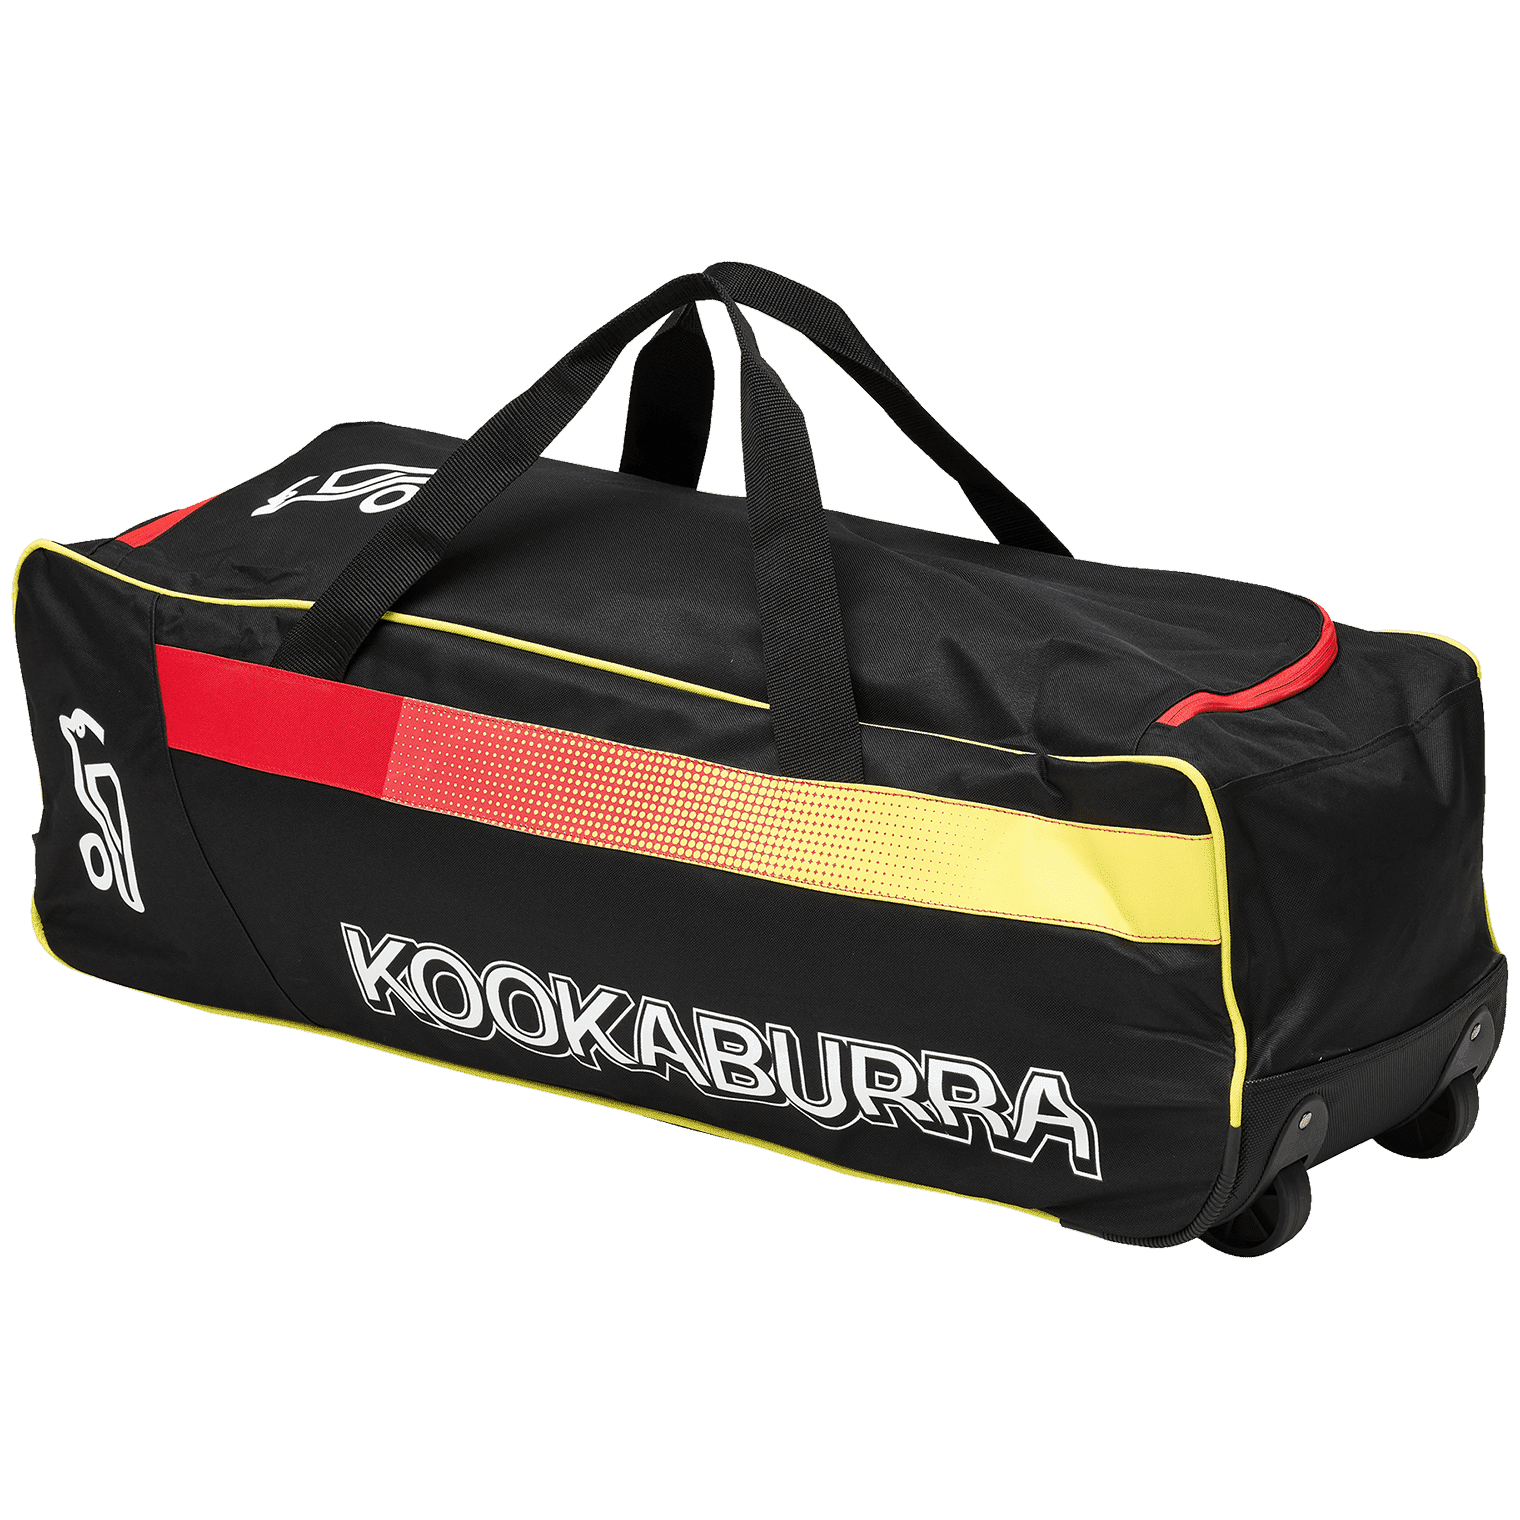 Kookaburra Cricket Bags Yellow Kookaburra 5.0 Wheelie Cricket Bag